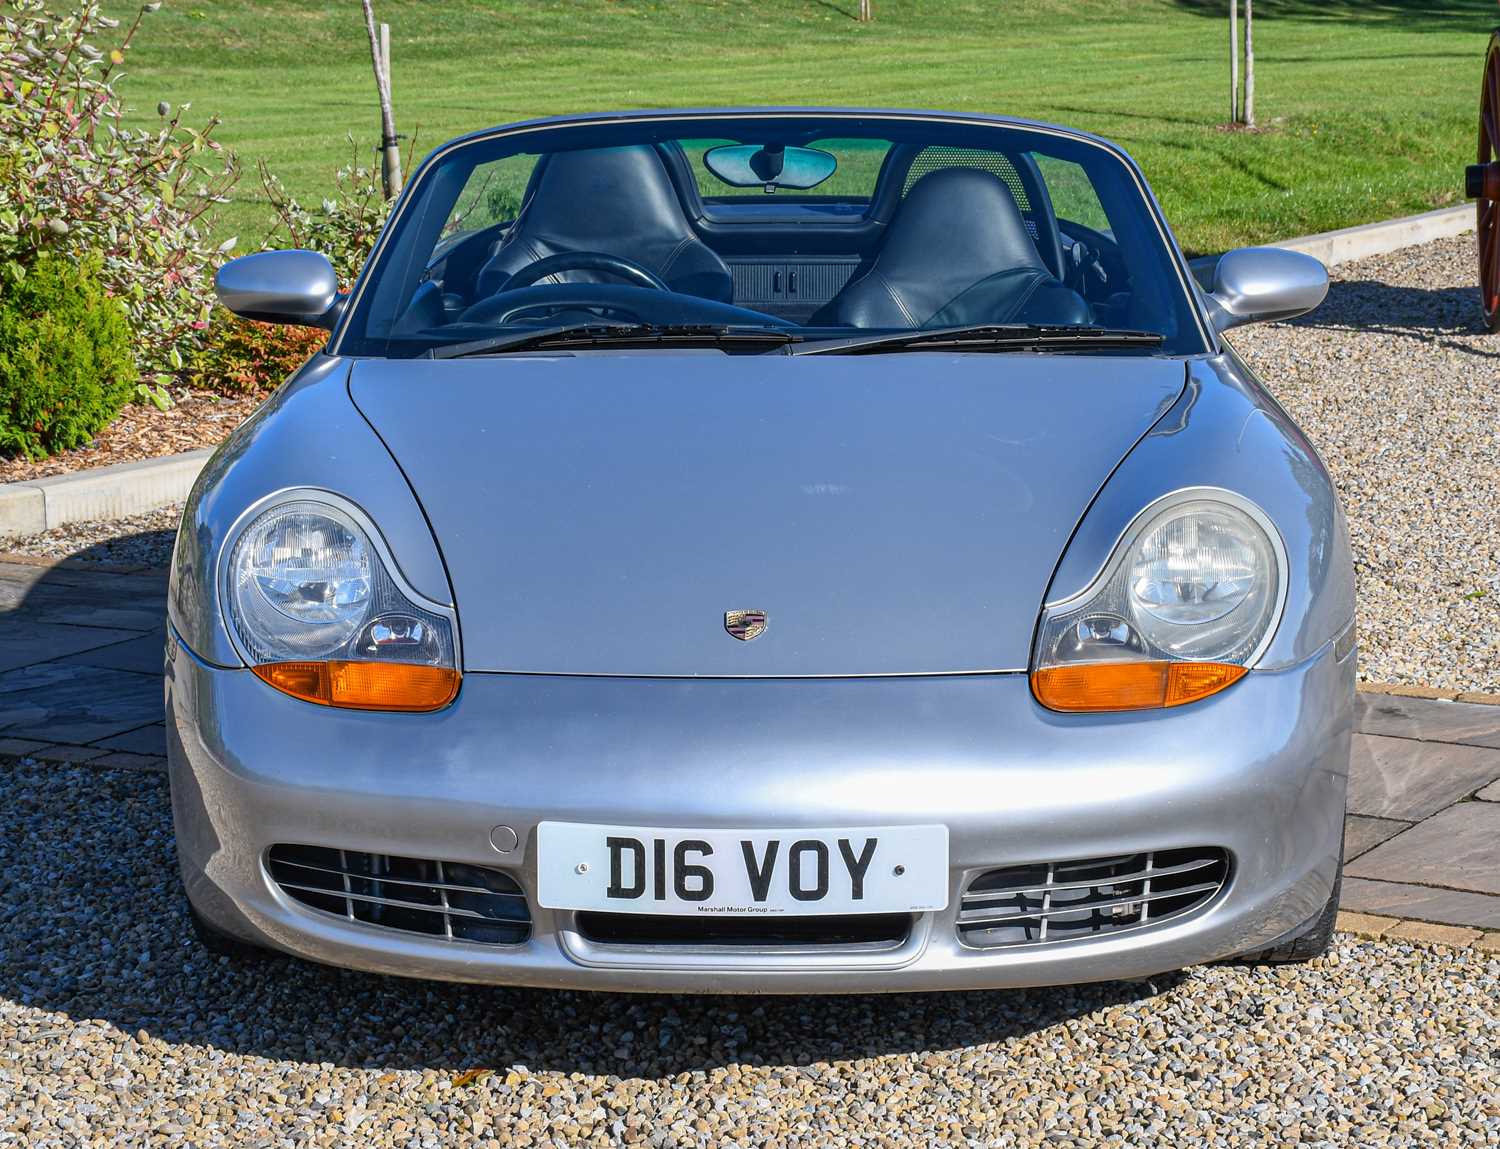 2002 Porsche Boxster SRegistration number: D16 VOYDate of first registration: 01/09/2002VIN - Image 2 of 5